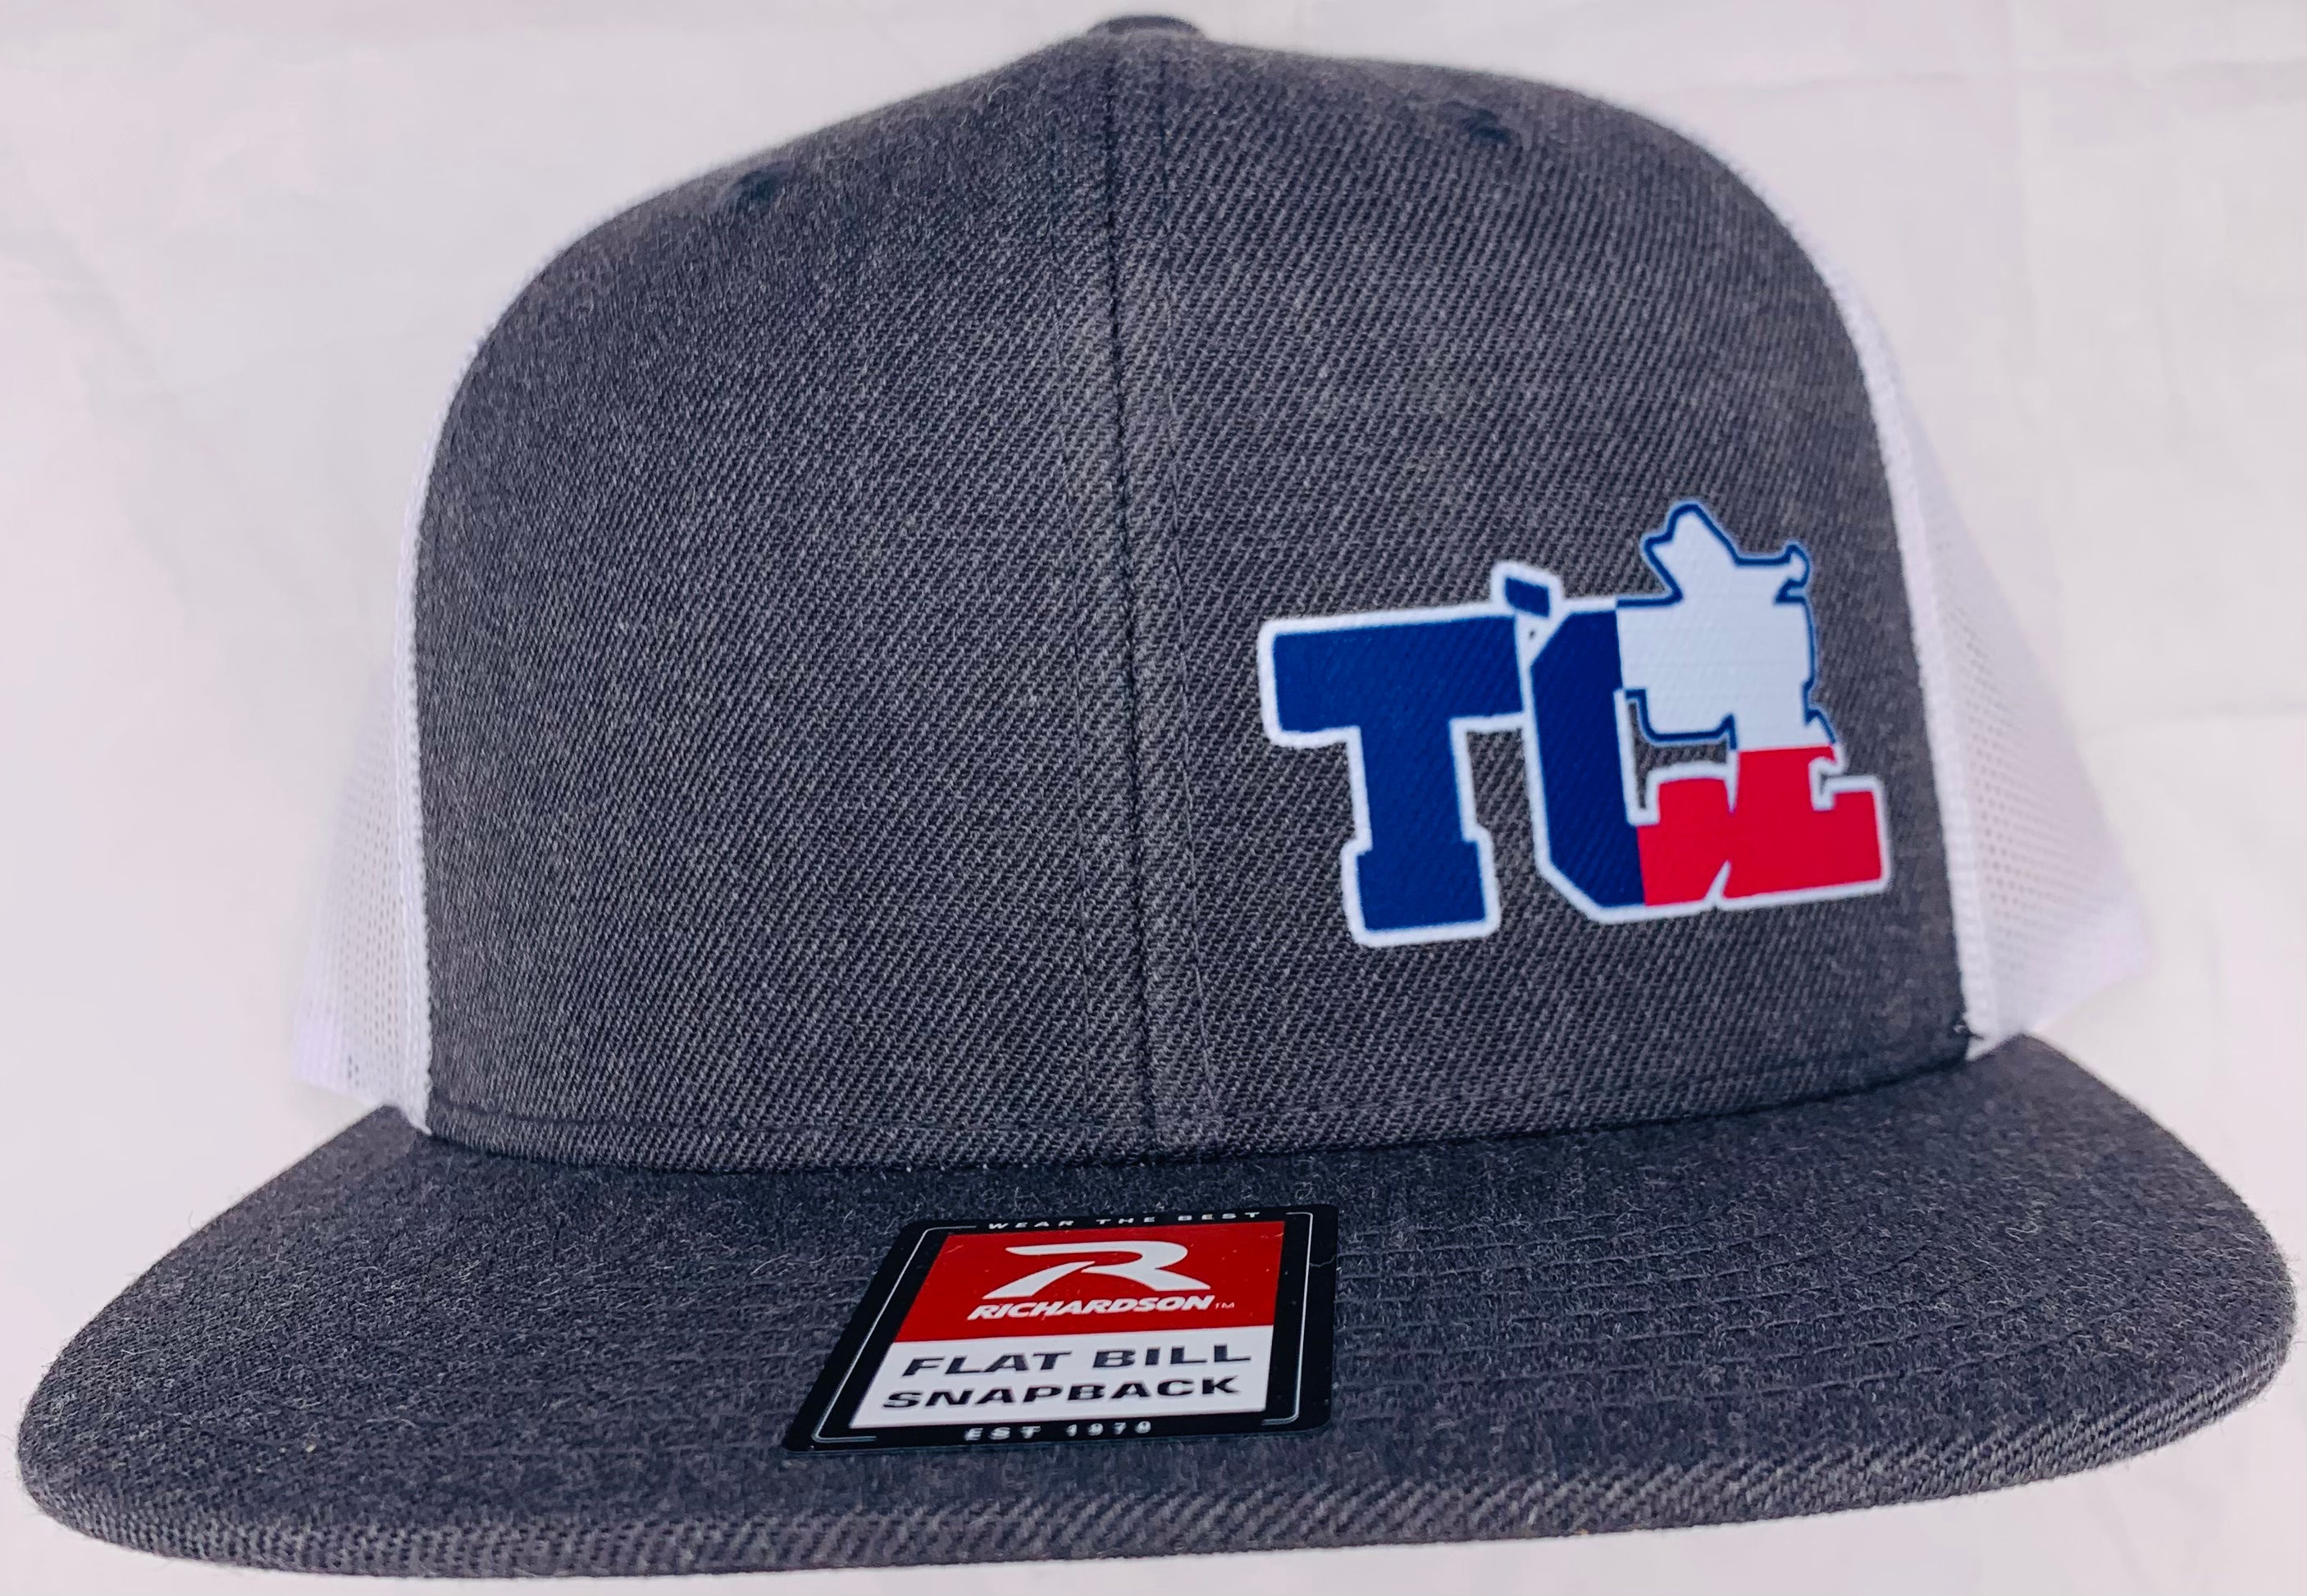 TCL Offset Flat Bill Snapback Hat